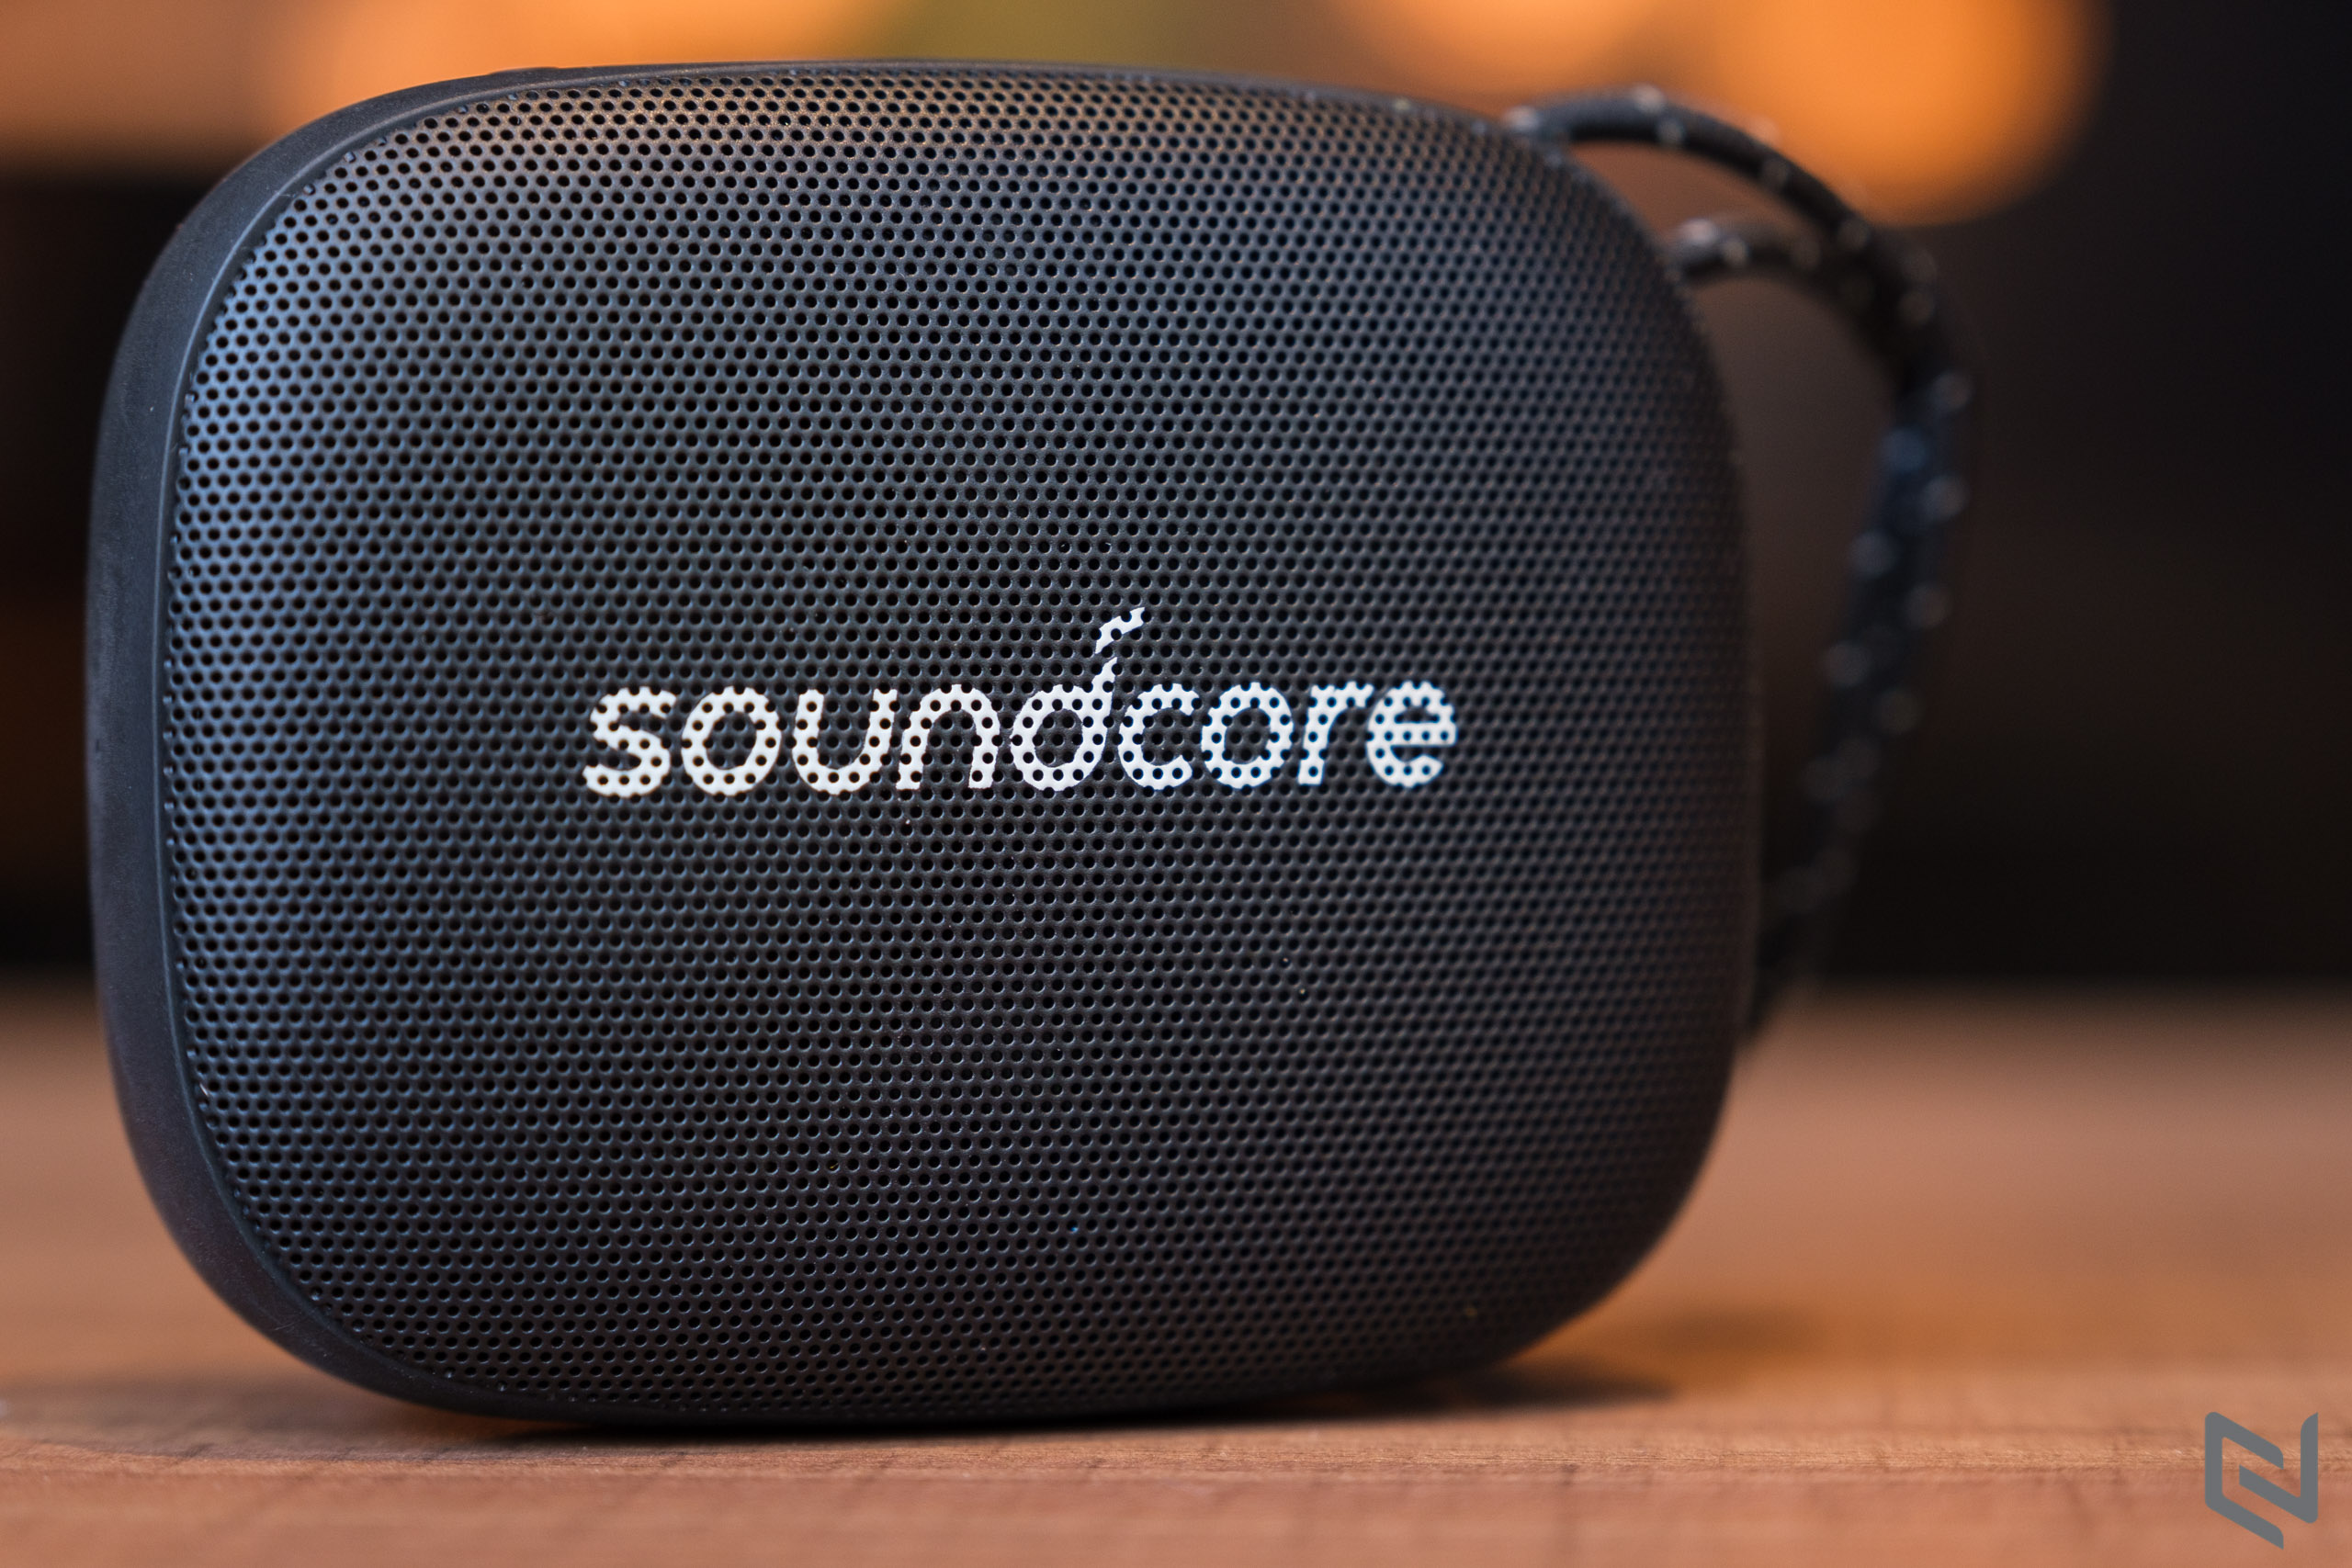 Siêu sale 11.11 tại Lazada, Anker giảm giá tai nghe và loa Soundcore lên tới 40%